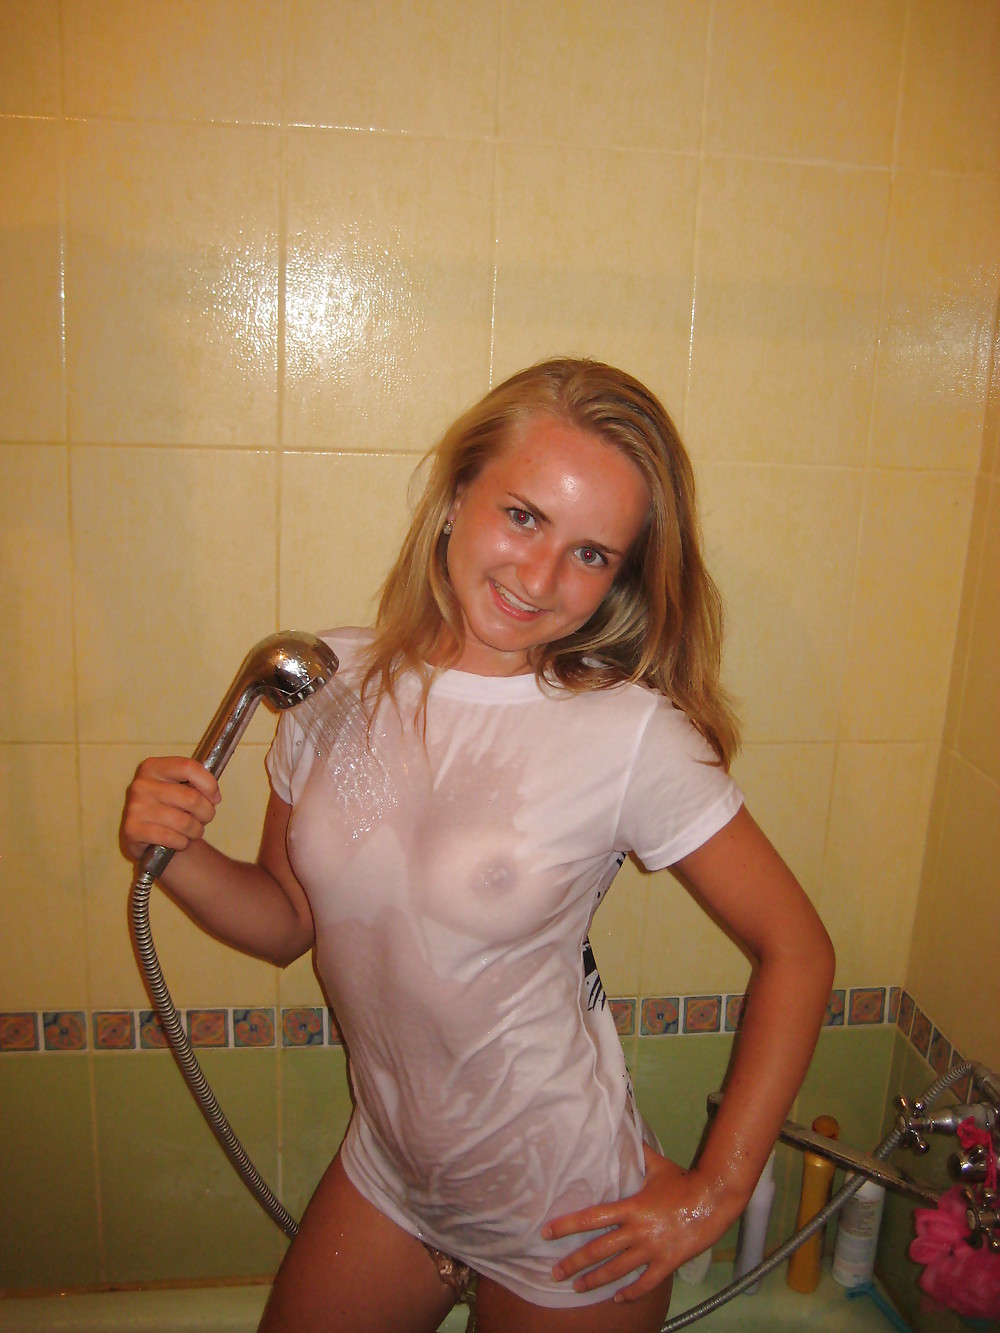 Hot Wetlook Girls in the Shower #22911980